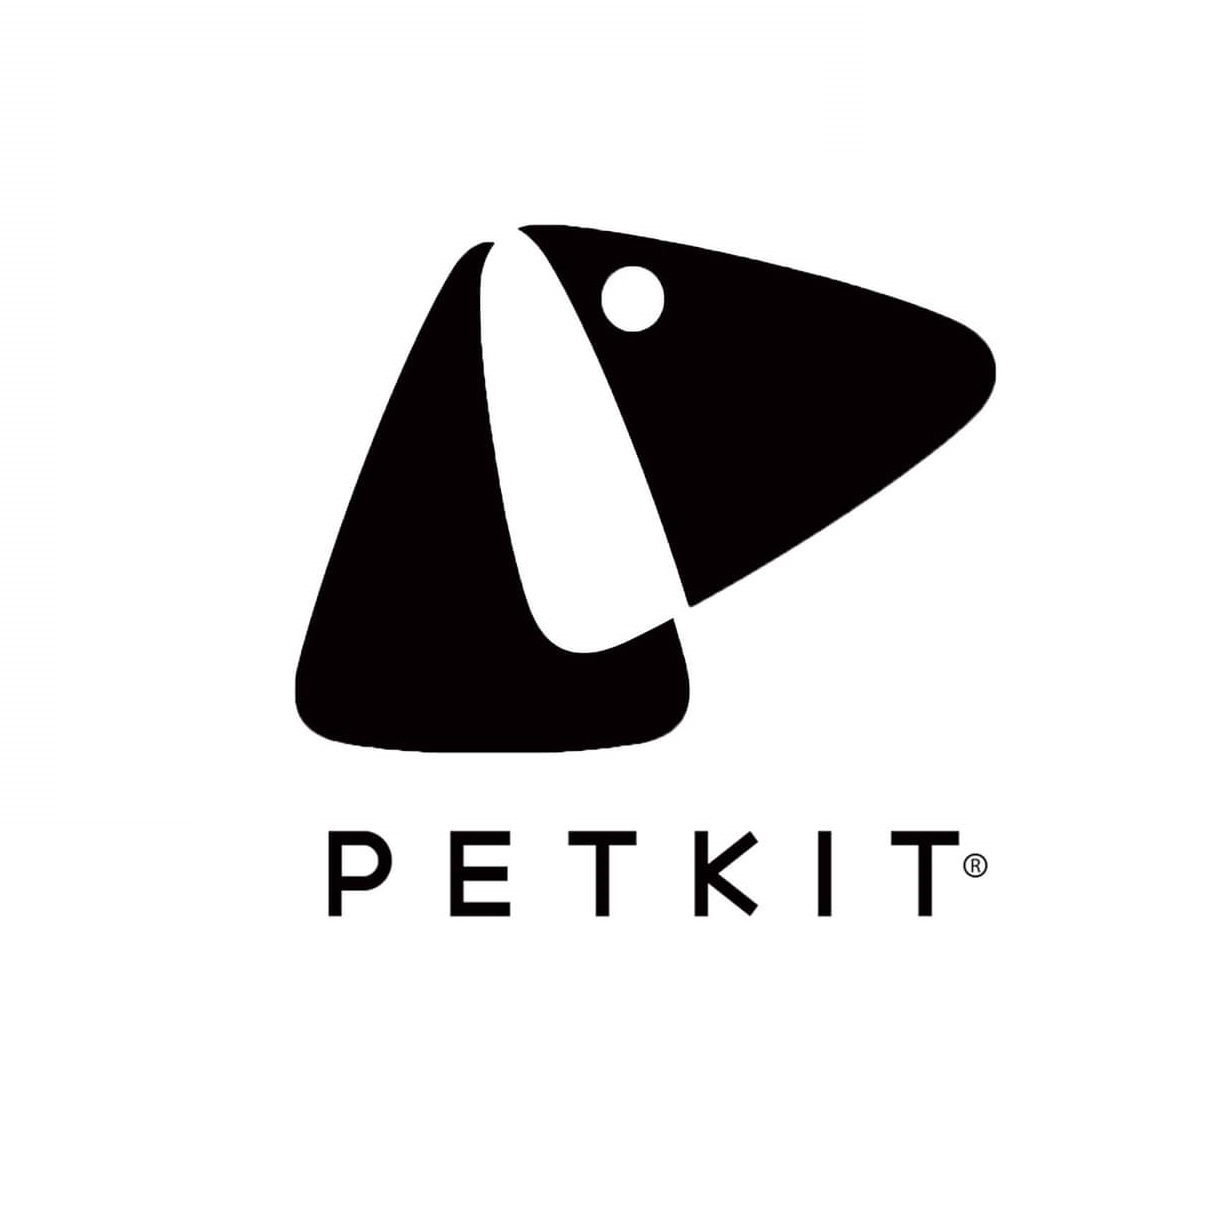 Petkit Authorized Distributor